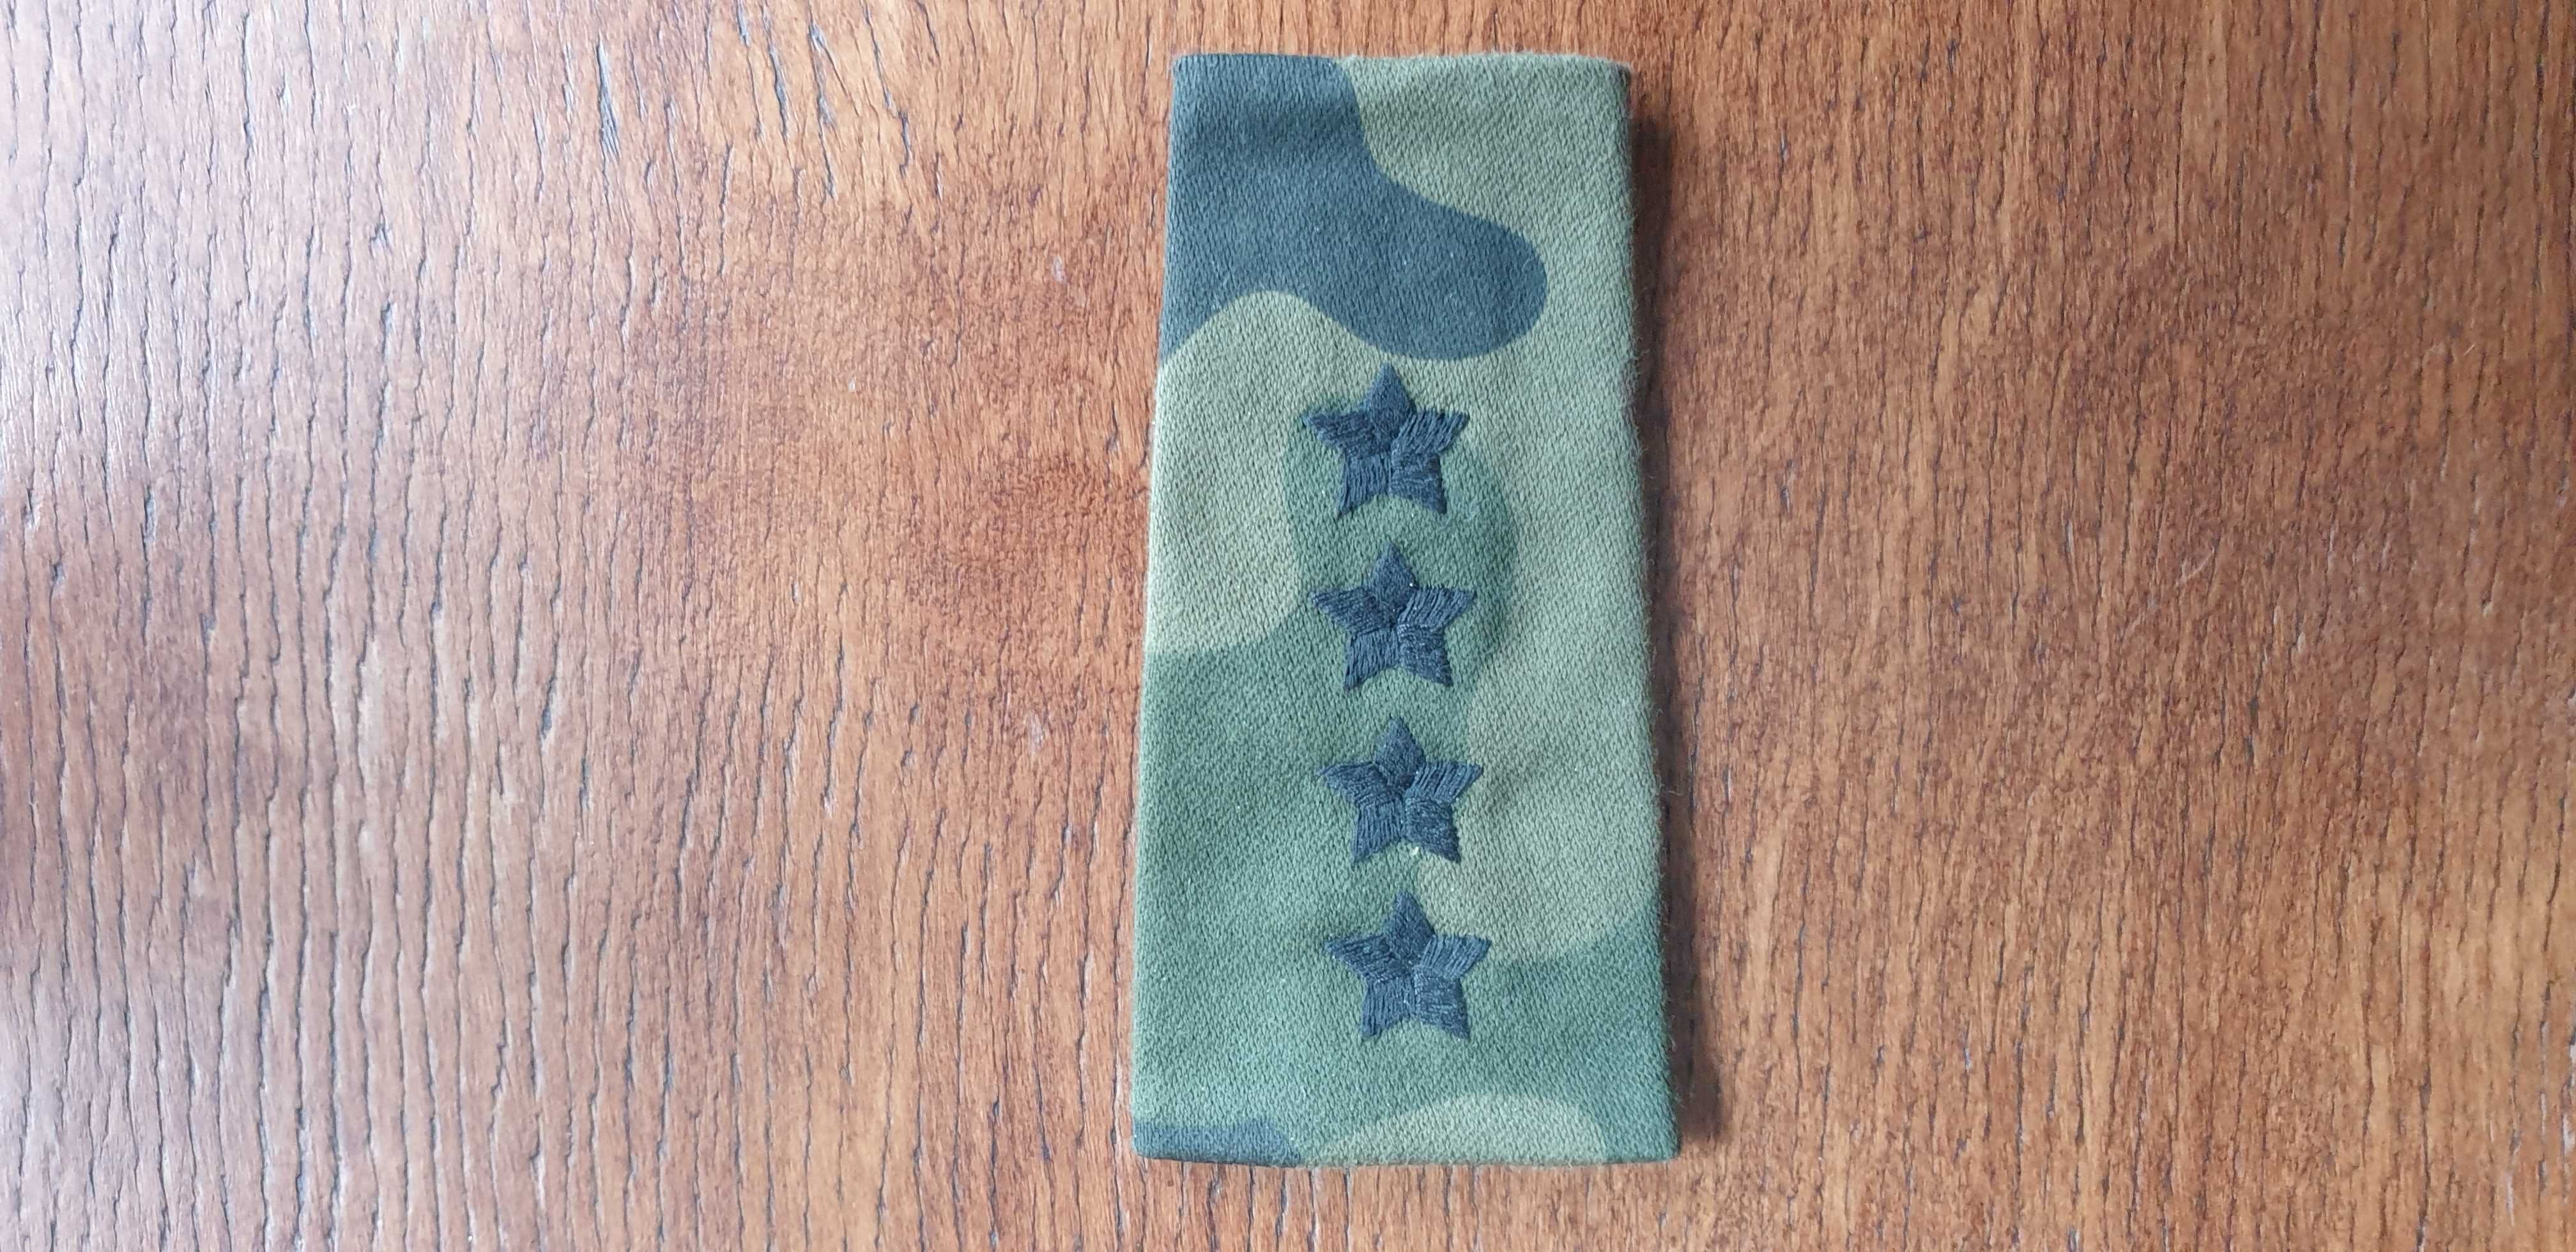 Pagon pochewka na mundur polowy WP kapitan używana bez krateczki